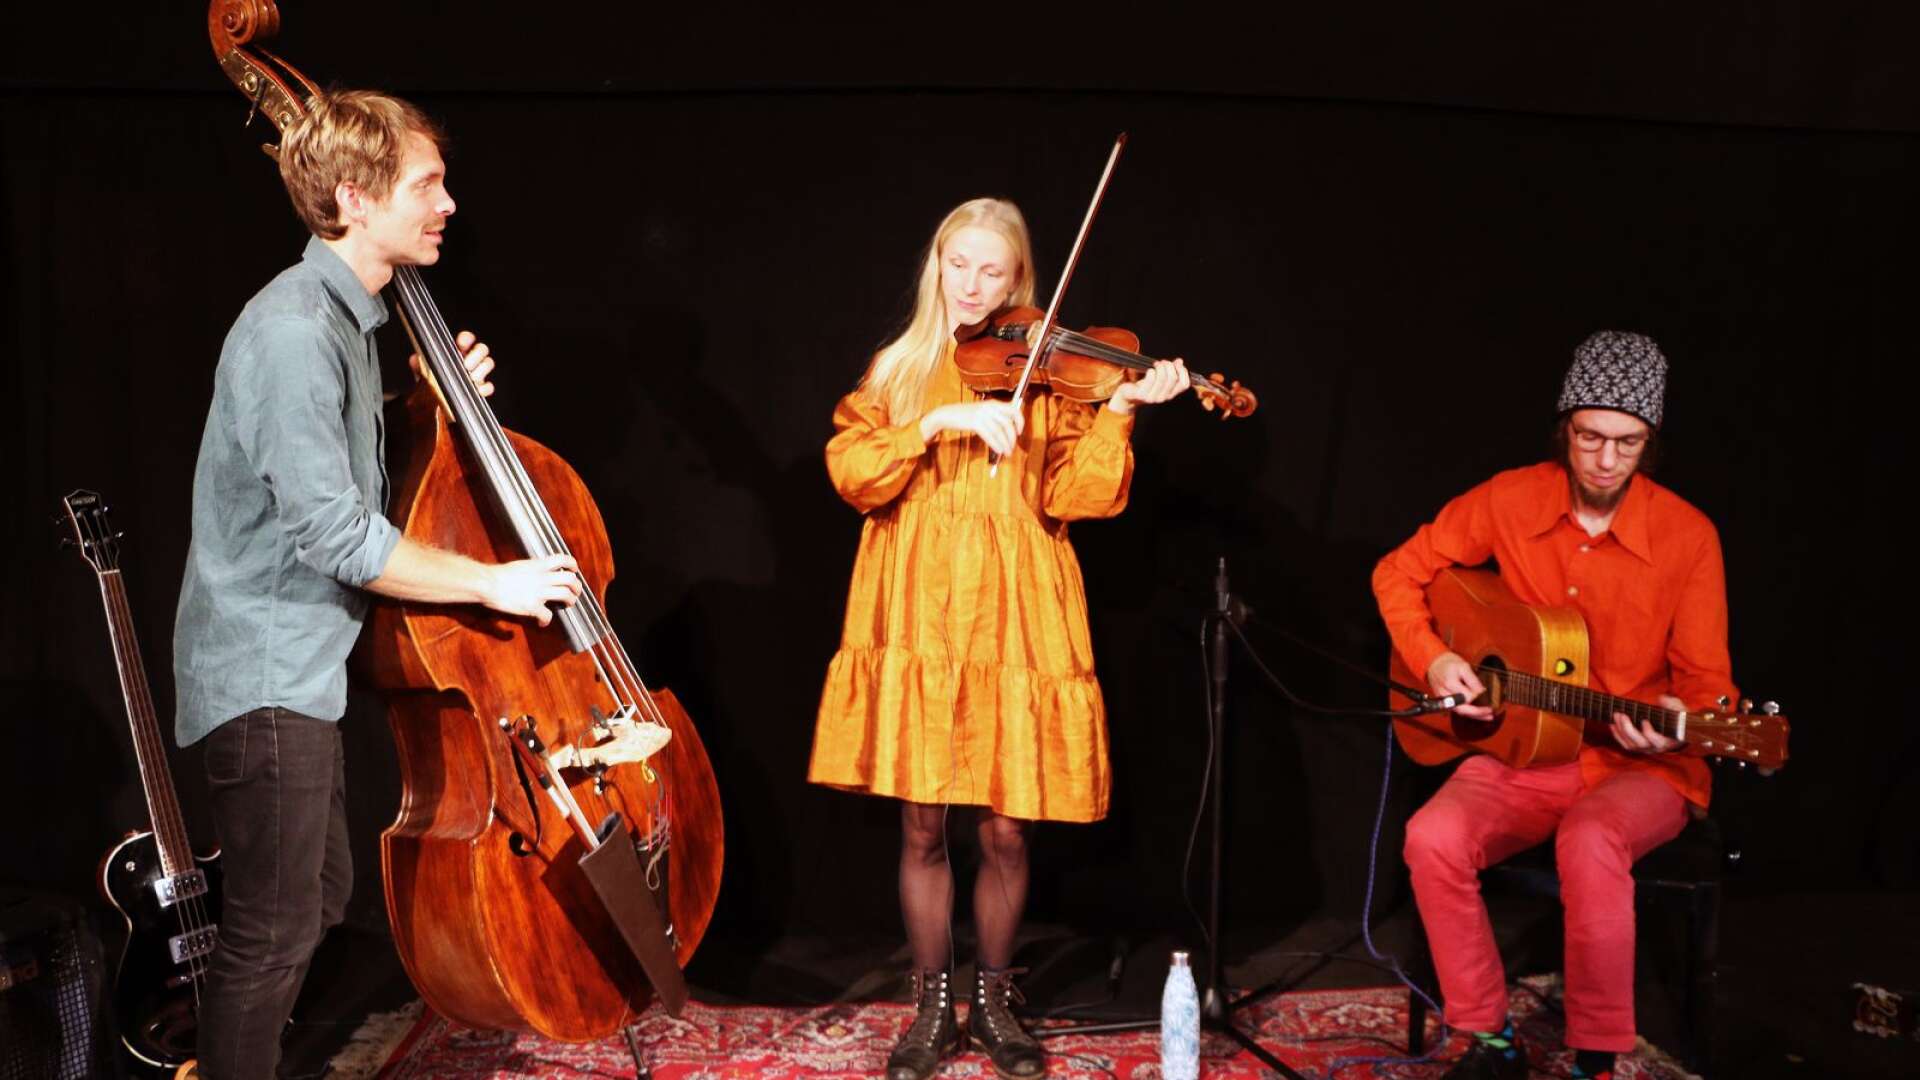 Kristofer Sundström, Lena Jonsson och Erik Ronström under inspelningen av musikvideon.